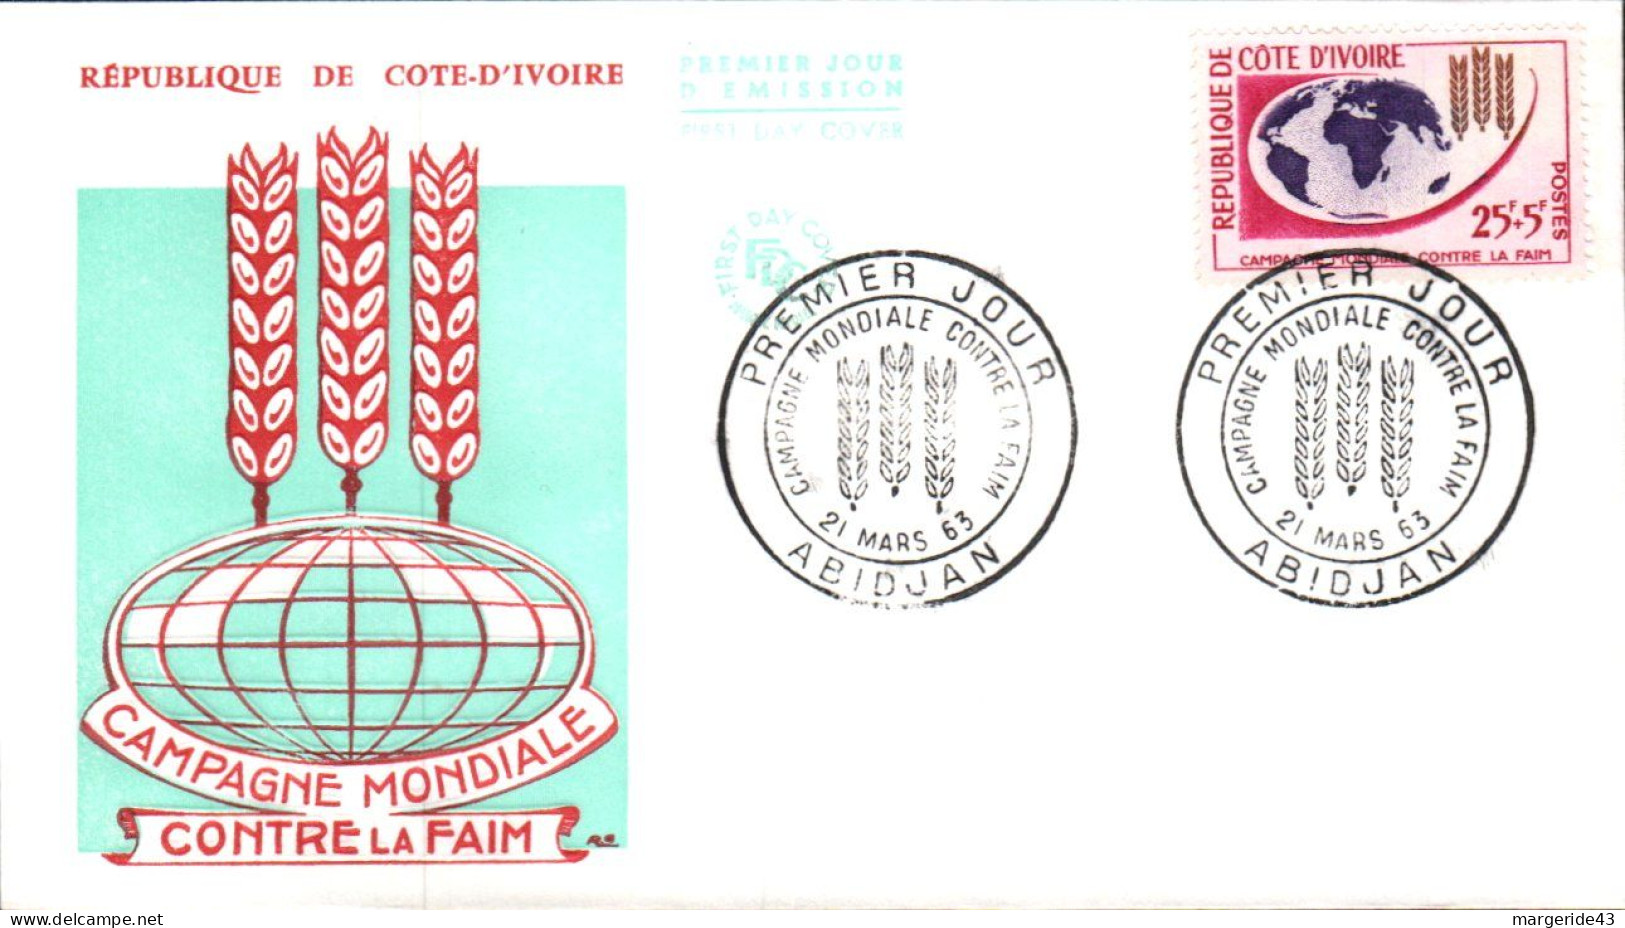 COTE D'IVOIRE FDC 1963 CAMPAGNE CONTRE LA FAIM - Côte D'Ivoire (1960-...)